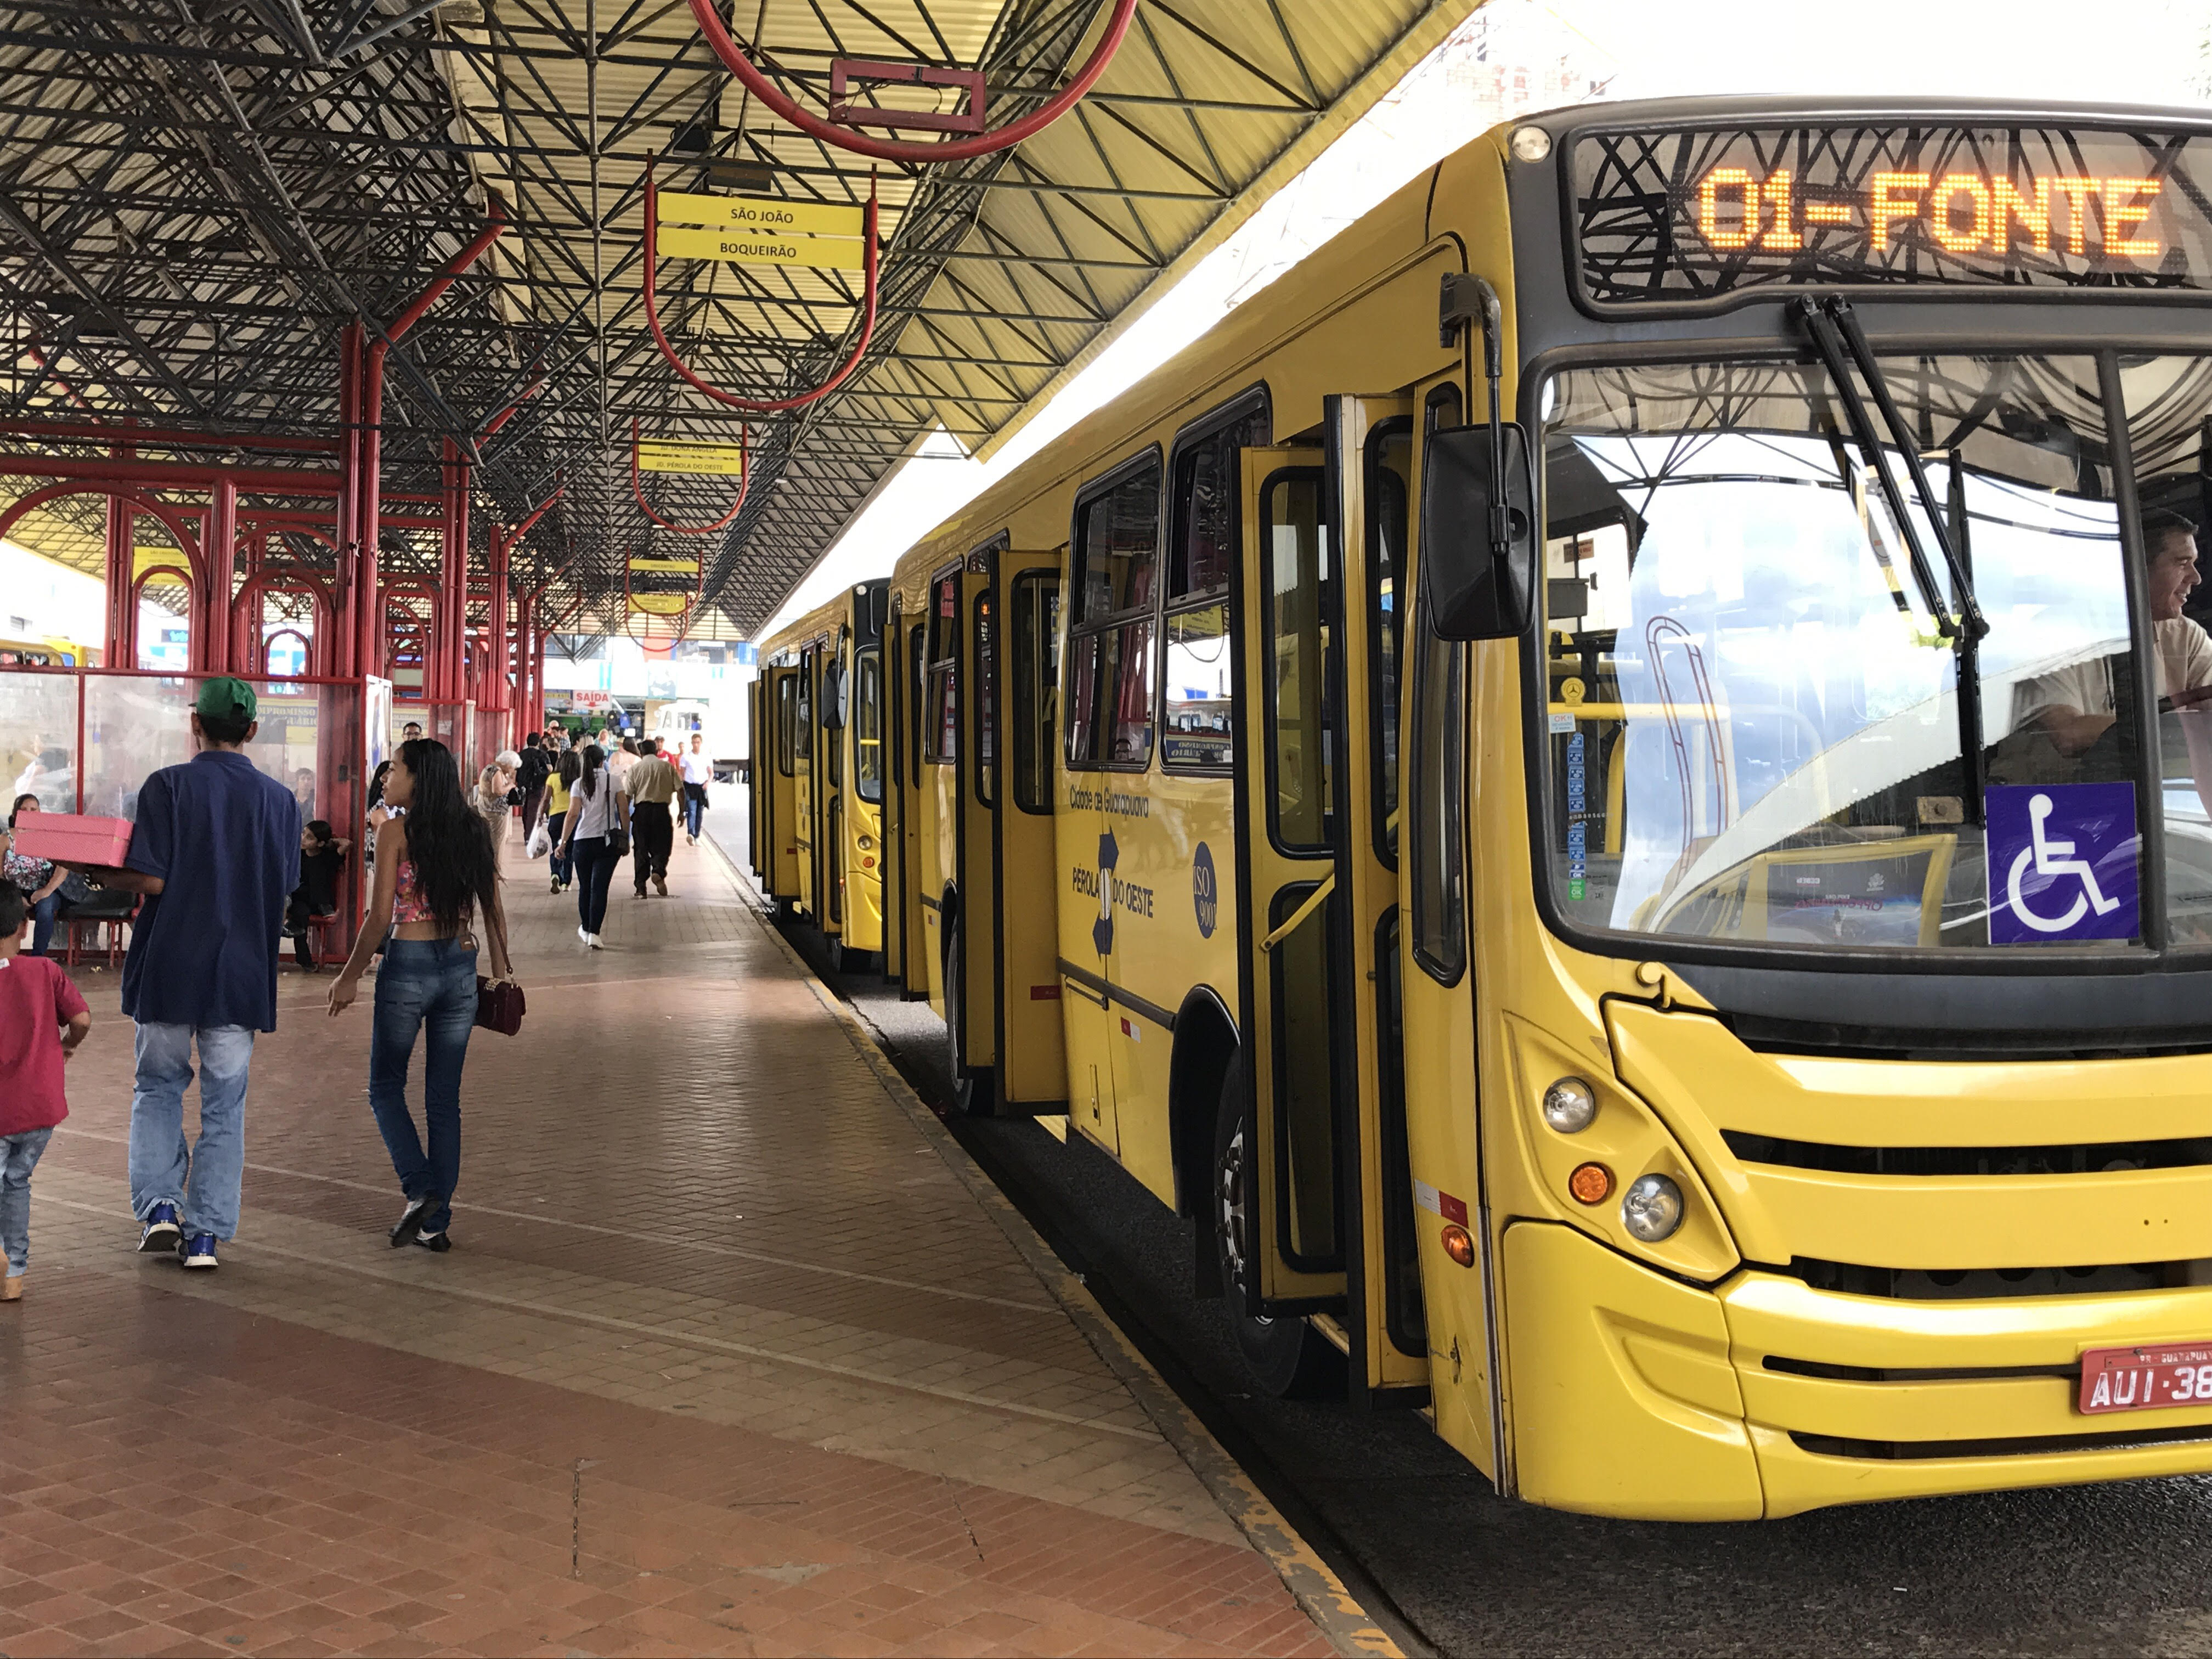 Reajuste de tarifa do transporte coletivo em Guarapuava acontece neste final de semana